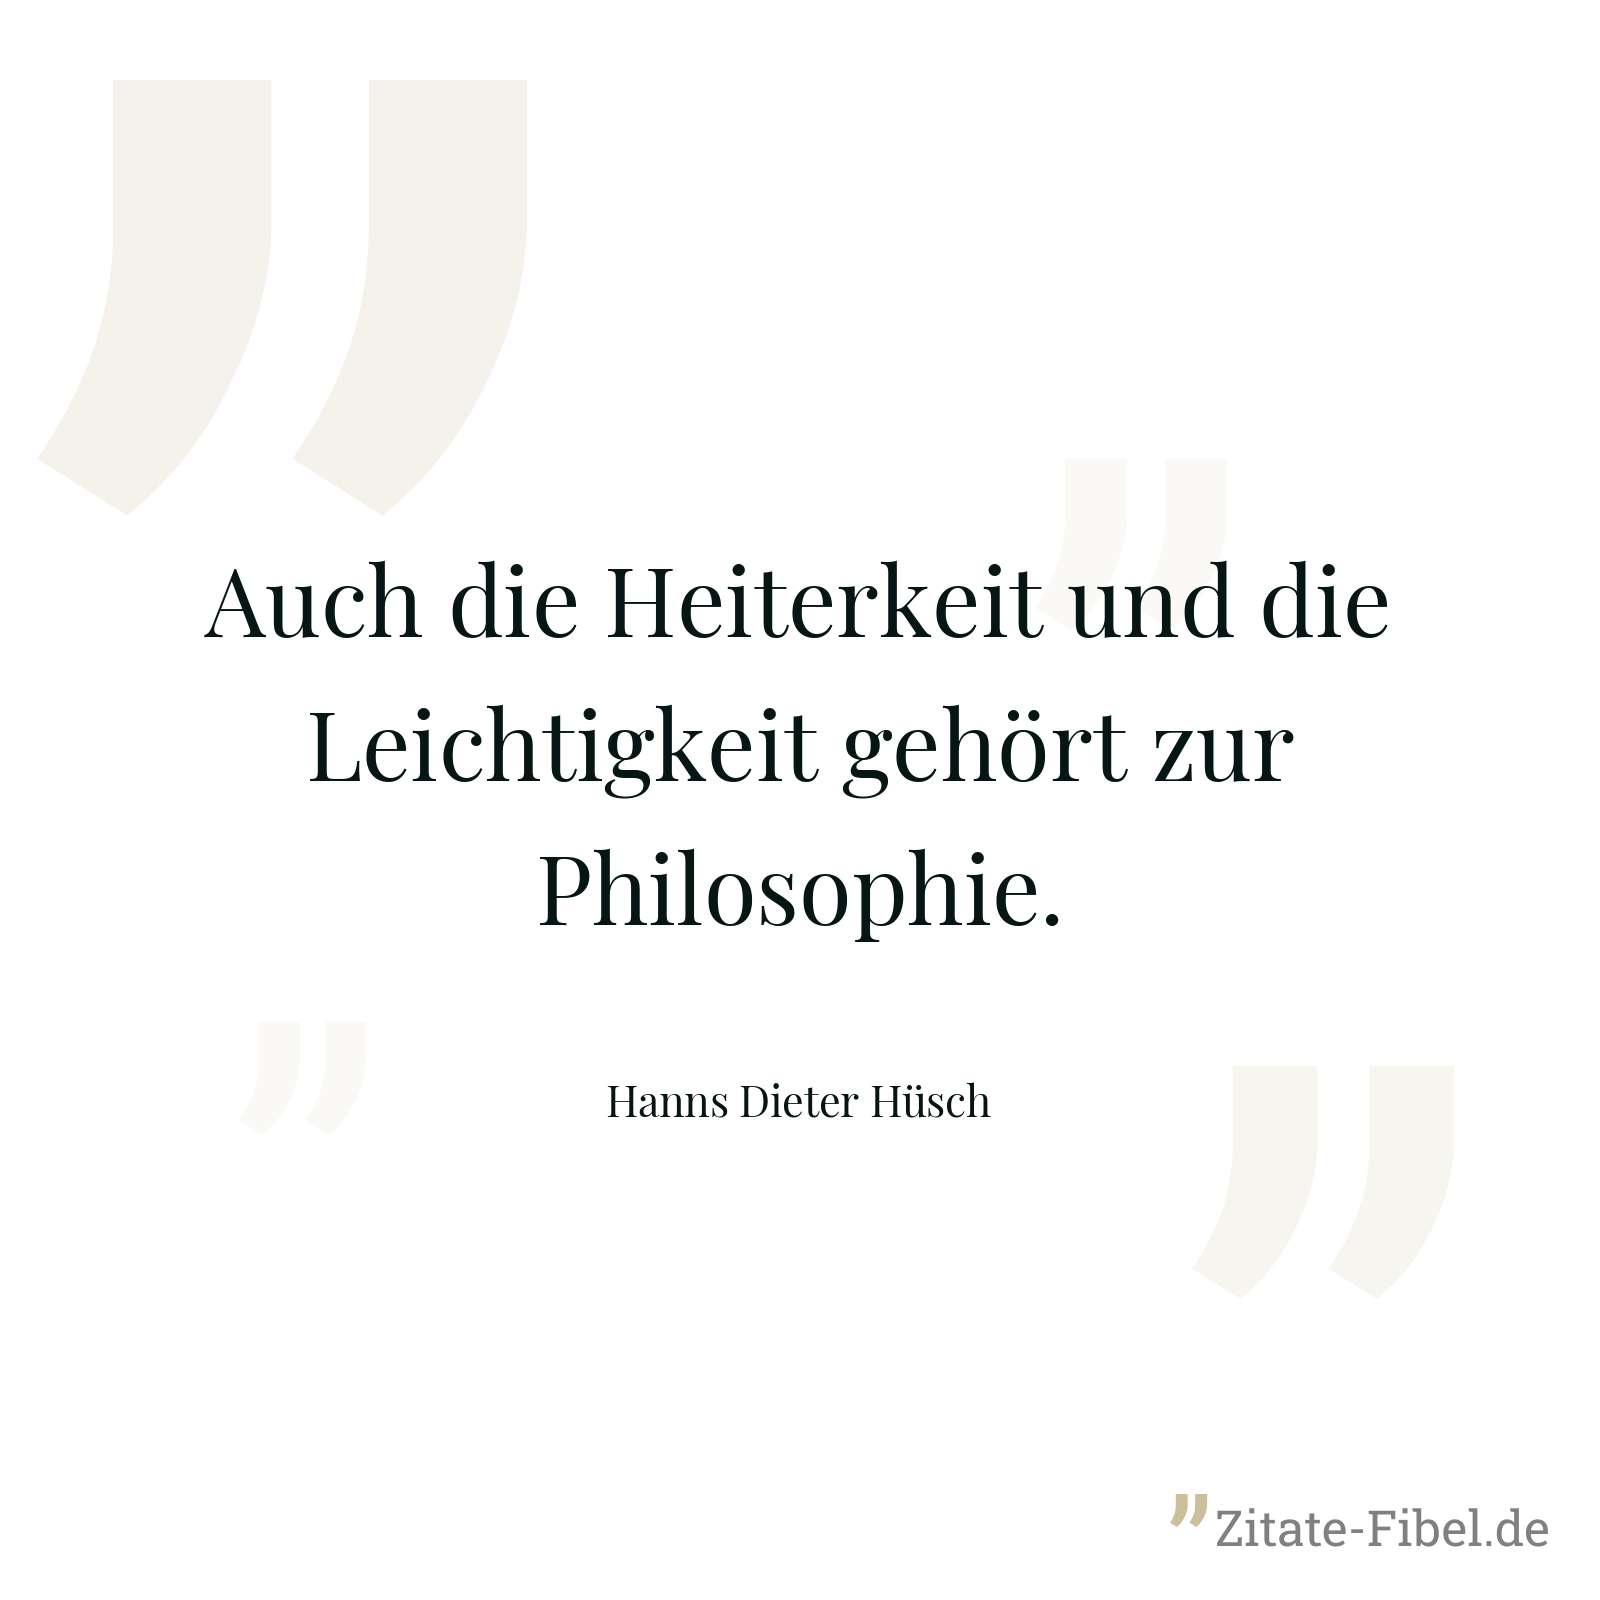 Auch die Heiterkeit und die Leichtigkeit gehört zur Philosophie. - Hanns Dieter Hüsch